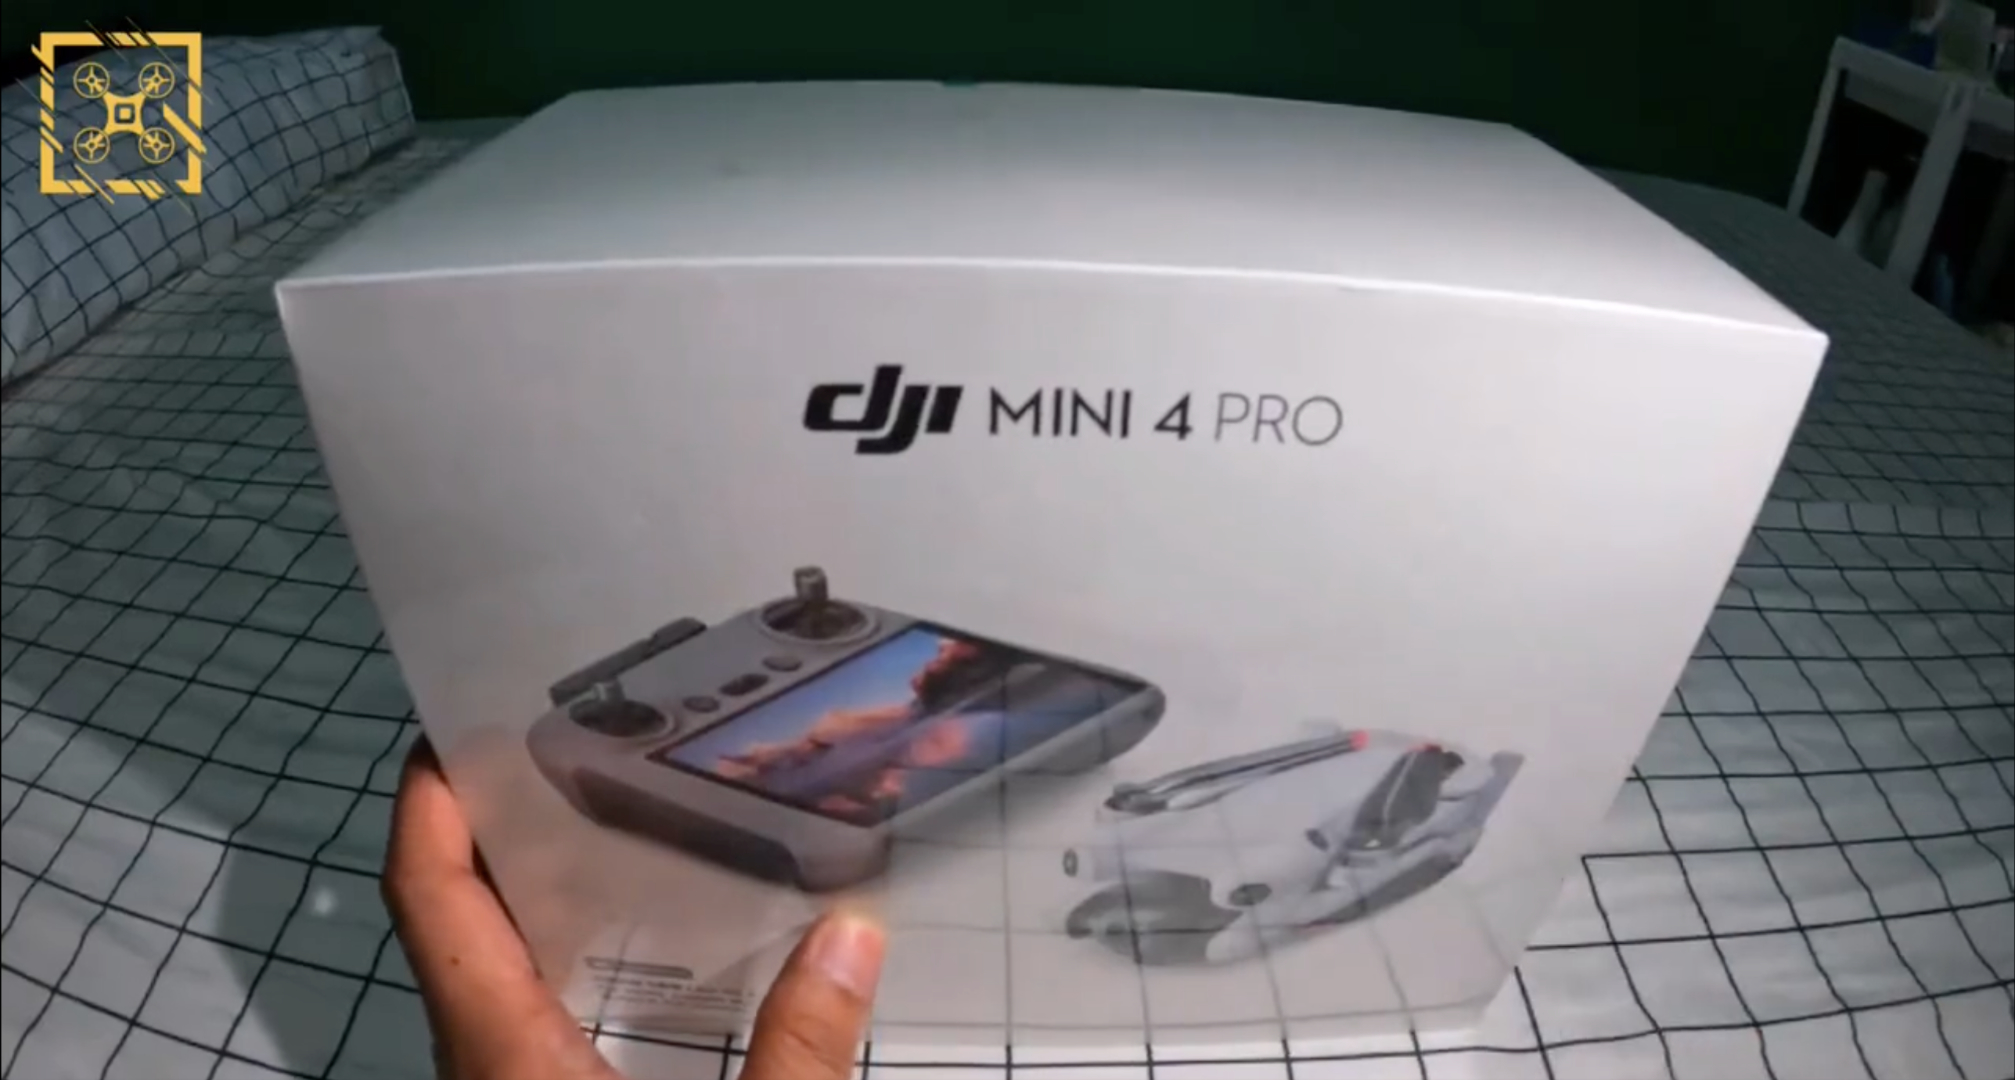 DJI Mini 4 Pro - Minimal Box